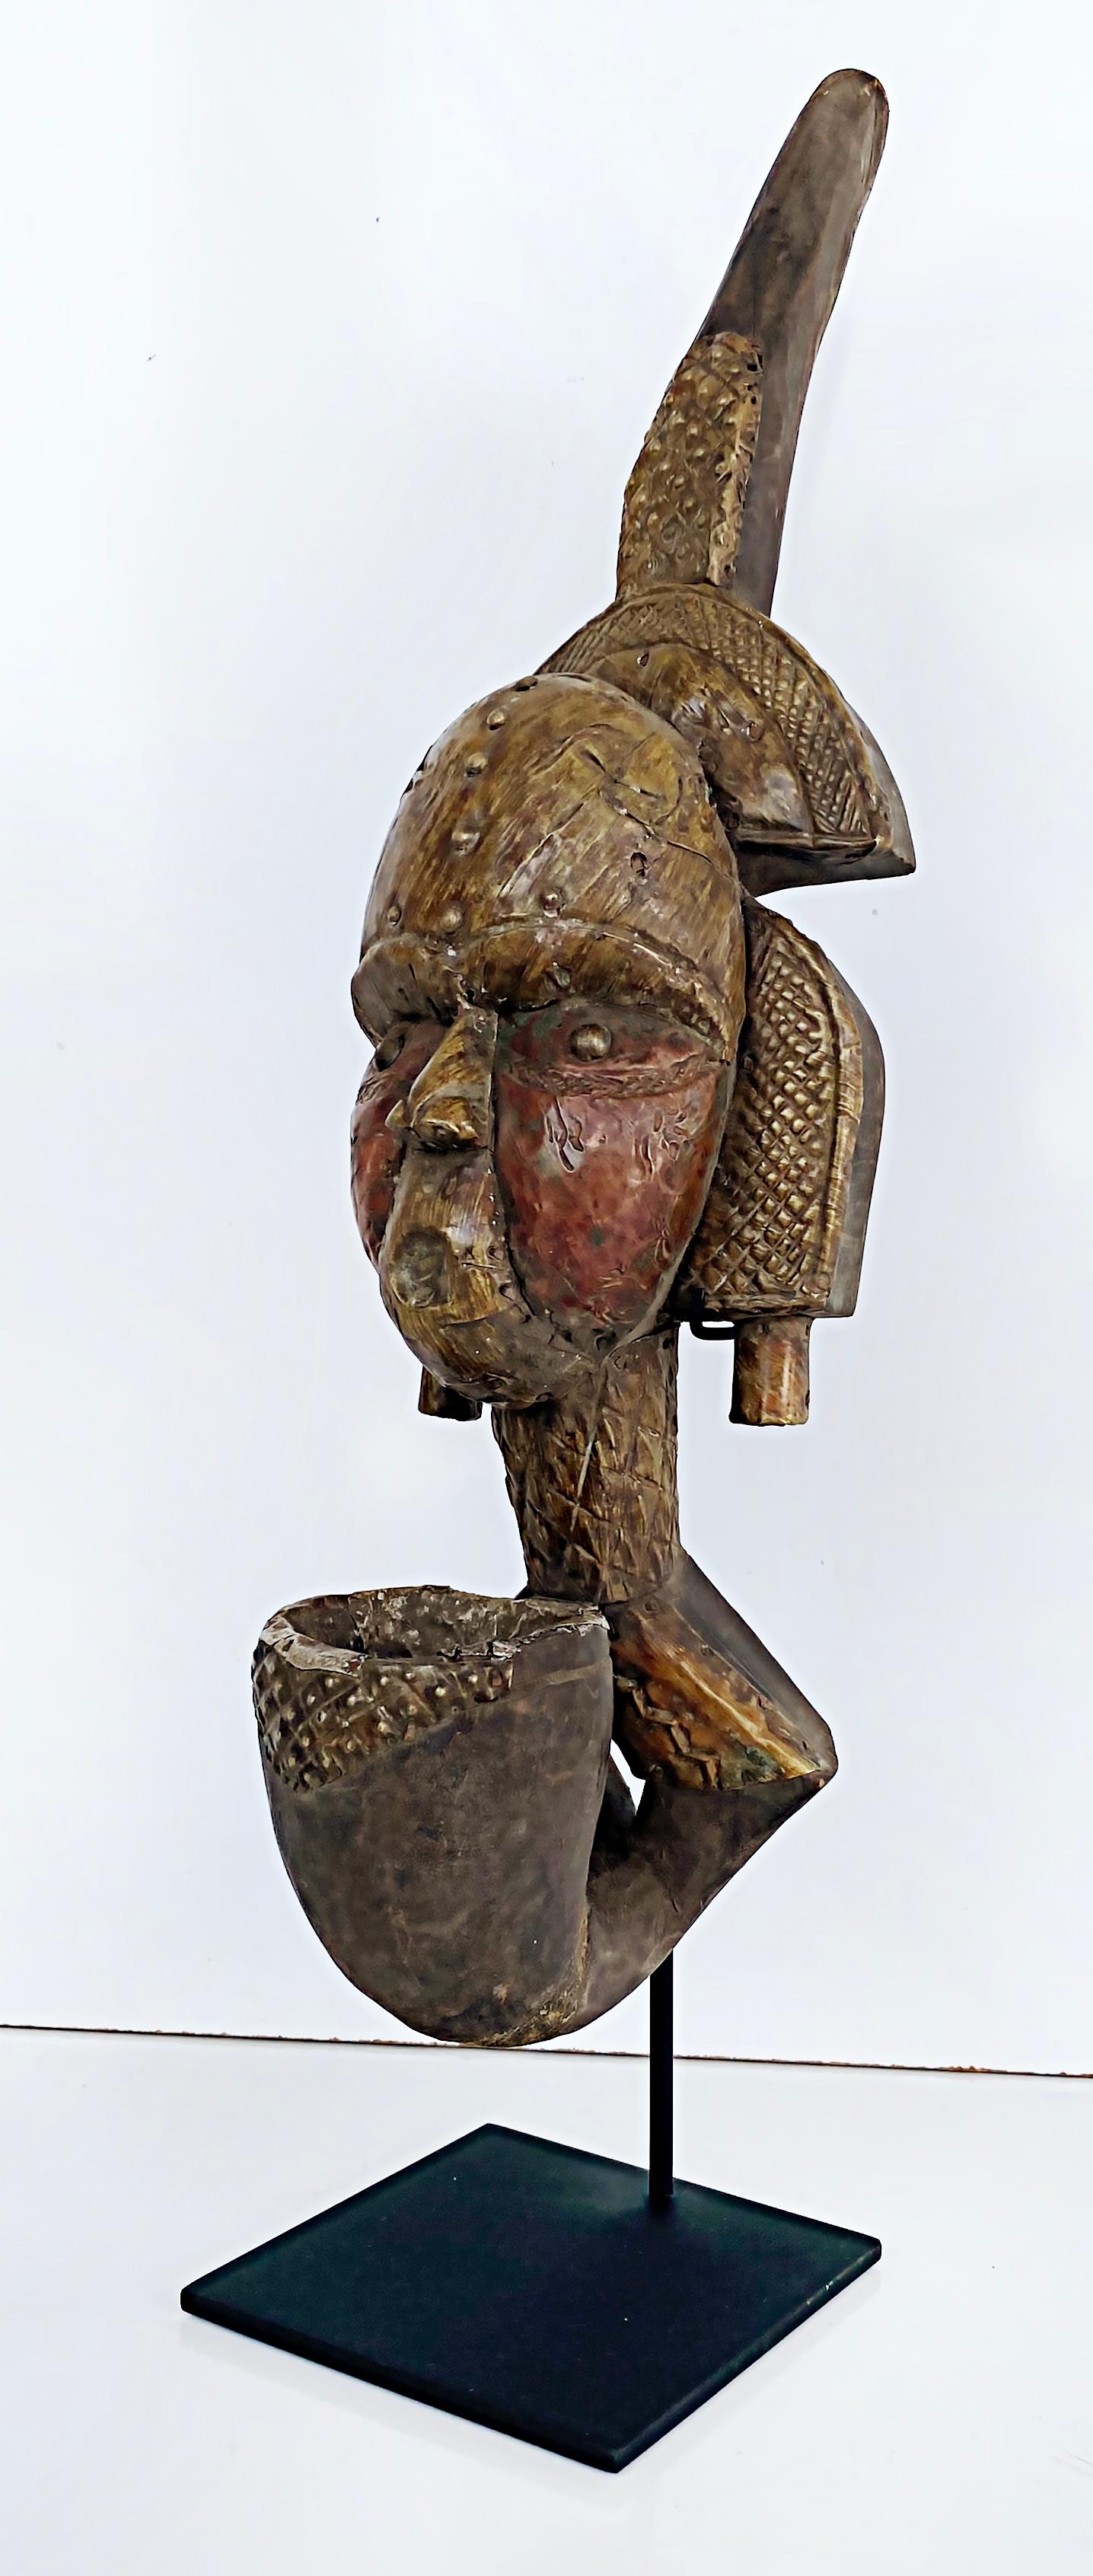 Pipe de réliquaire africaine Kota People of Sebe Valley, 20e siècle

Nous proposons à la vente une pipe reliquaire africaine (Gabon), sculptée par le peuple Kota de Sebe Vallery, datant du 20e siècle.  Cette sculpture est revêtue de métal et de